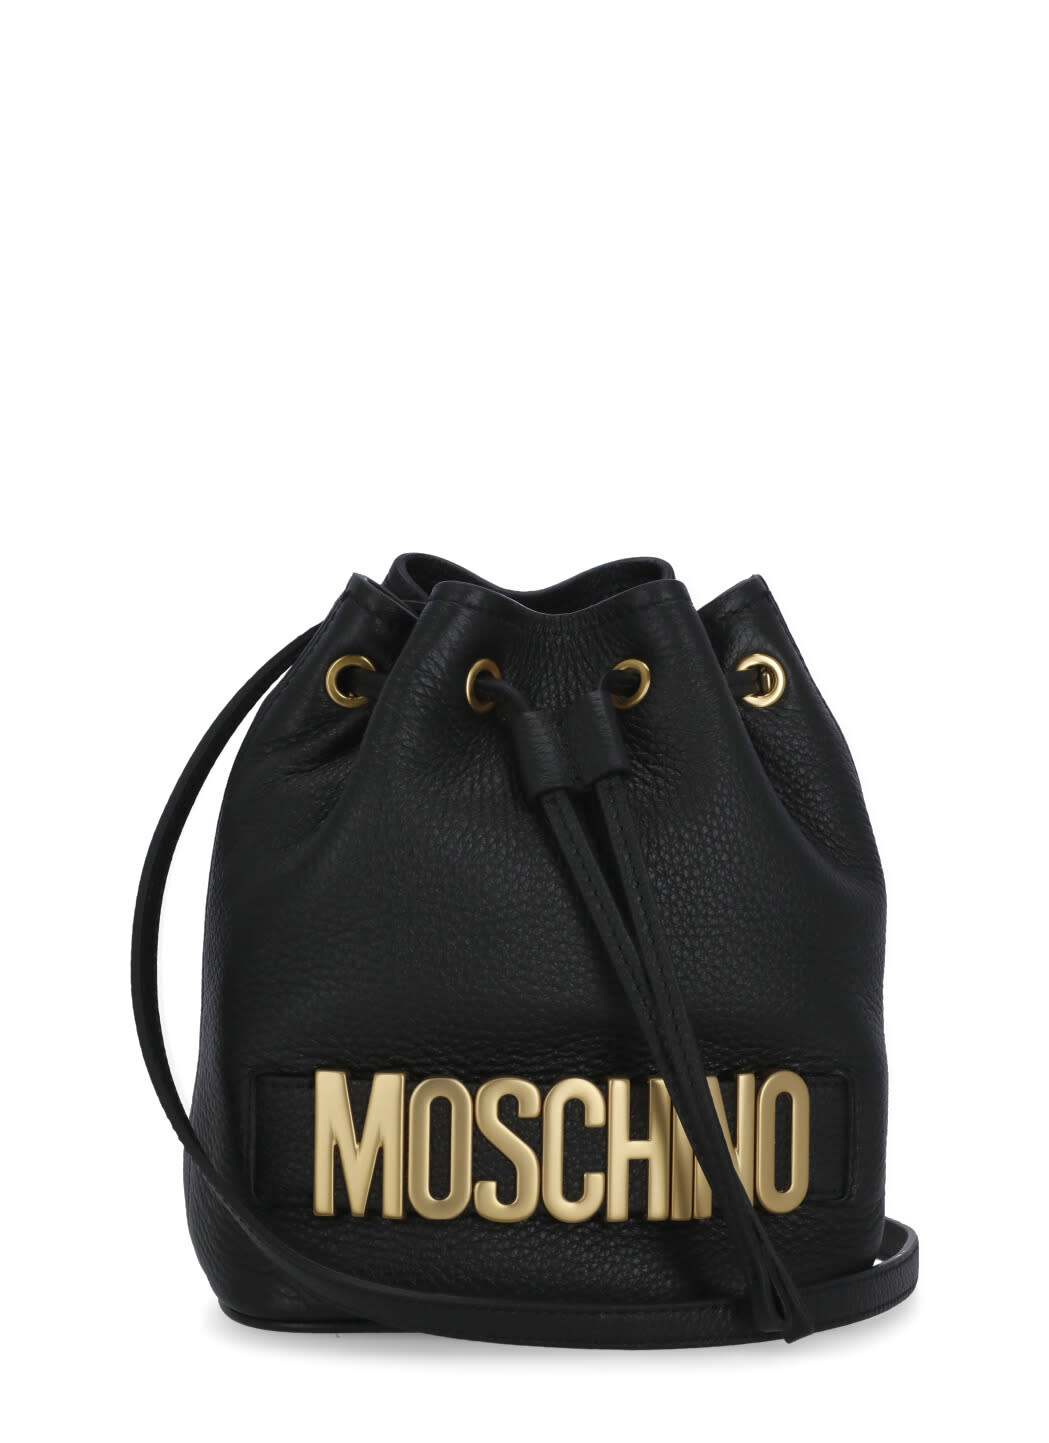 Moschino Leather Bucket Bag